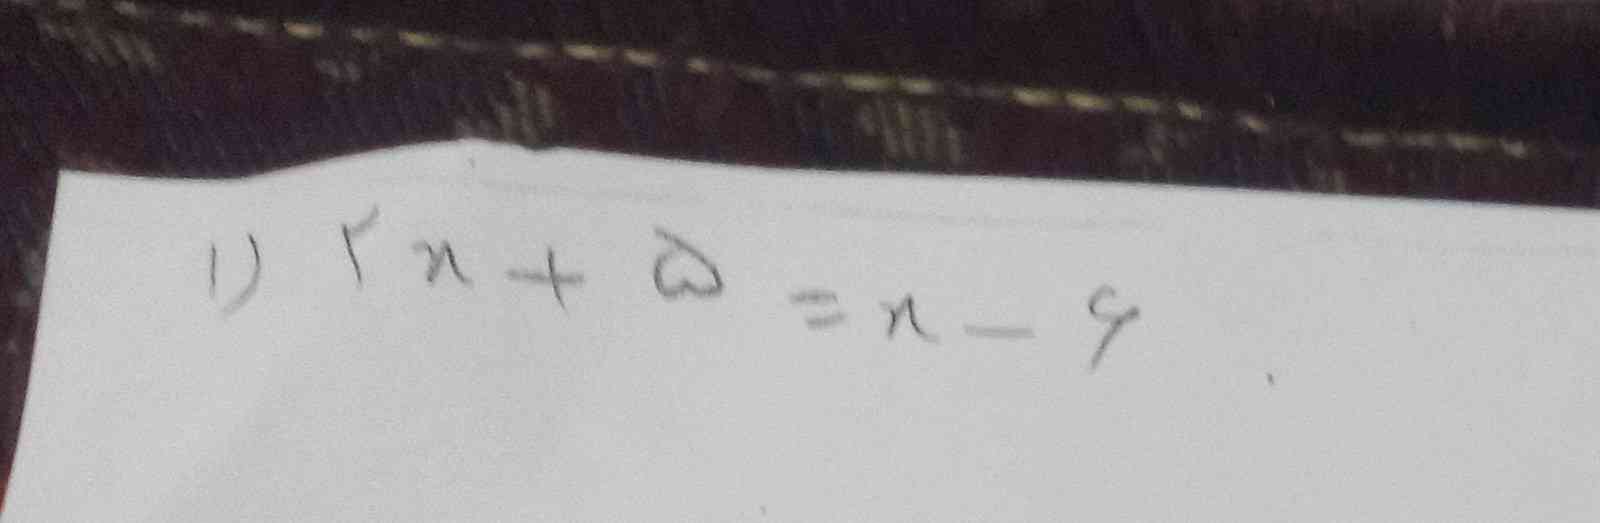 چطور باید معادله حل کنیم 
